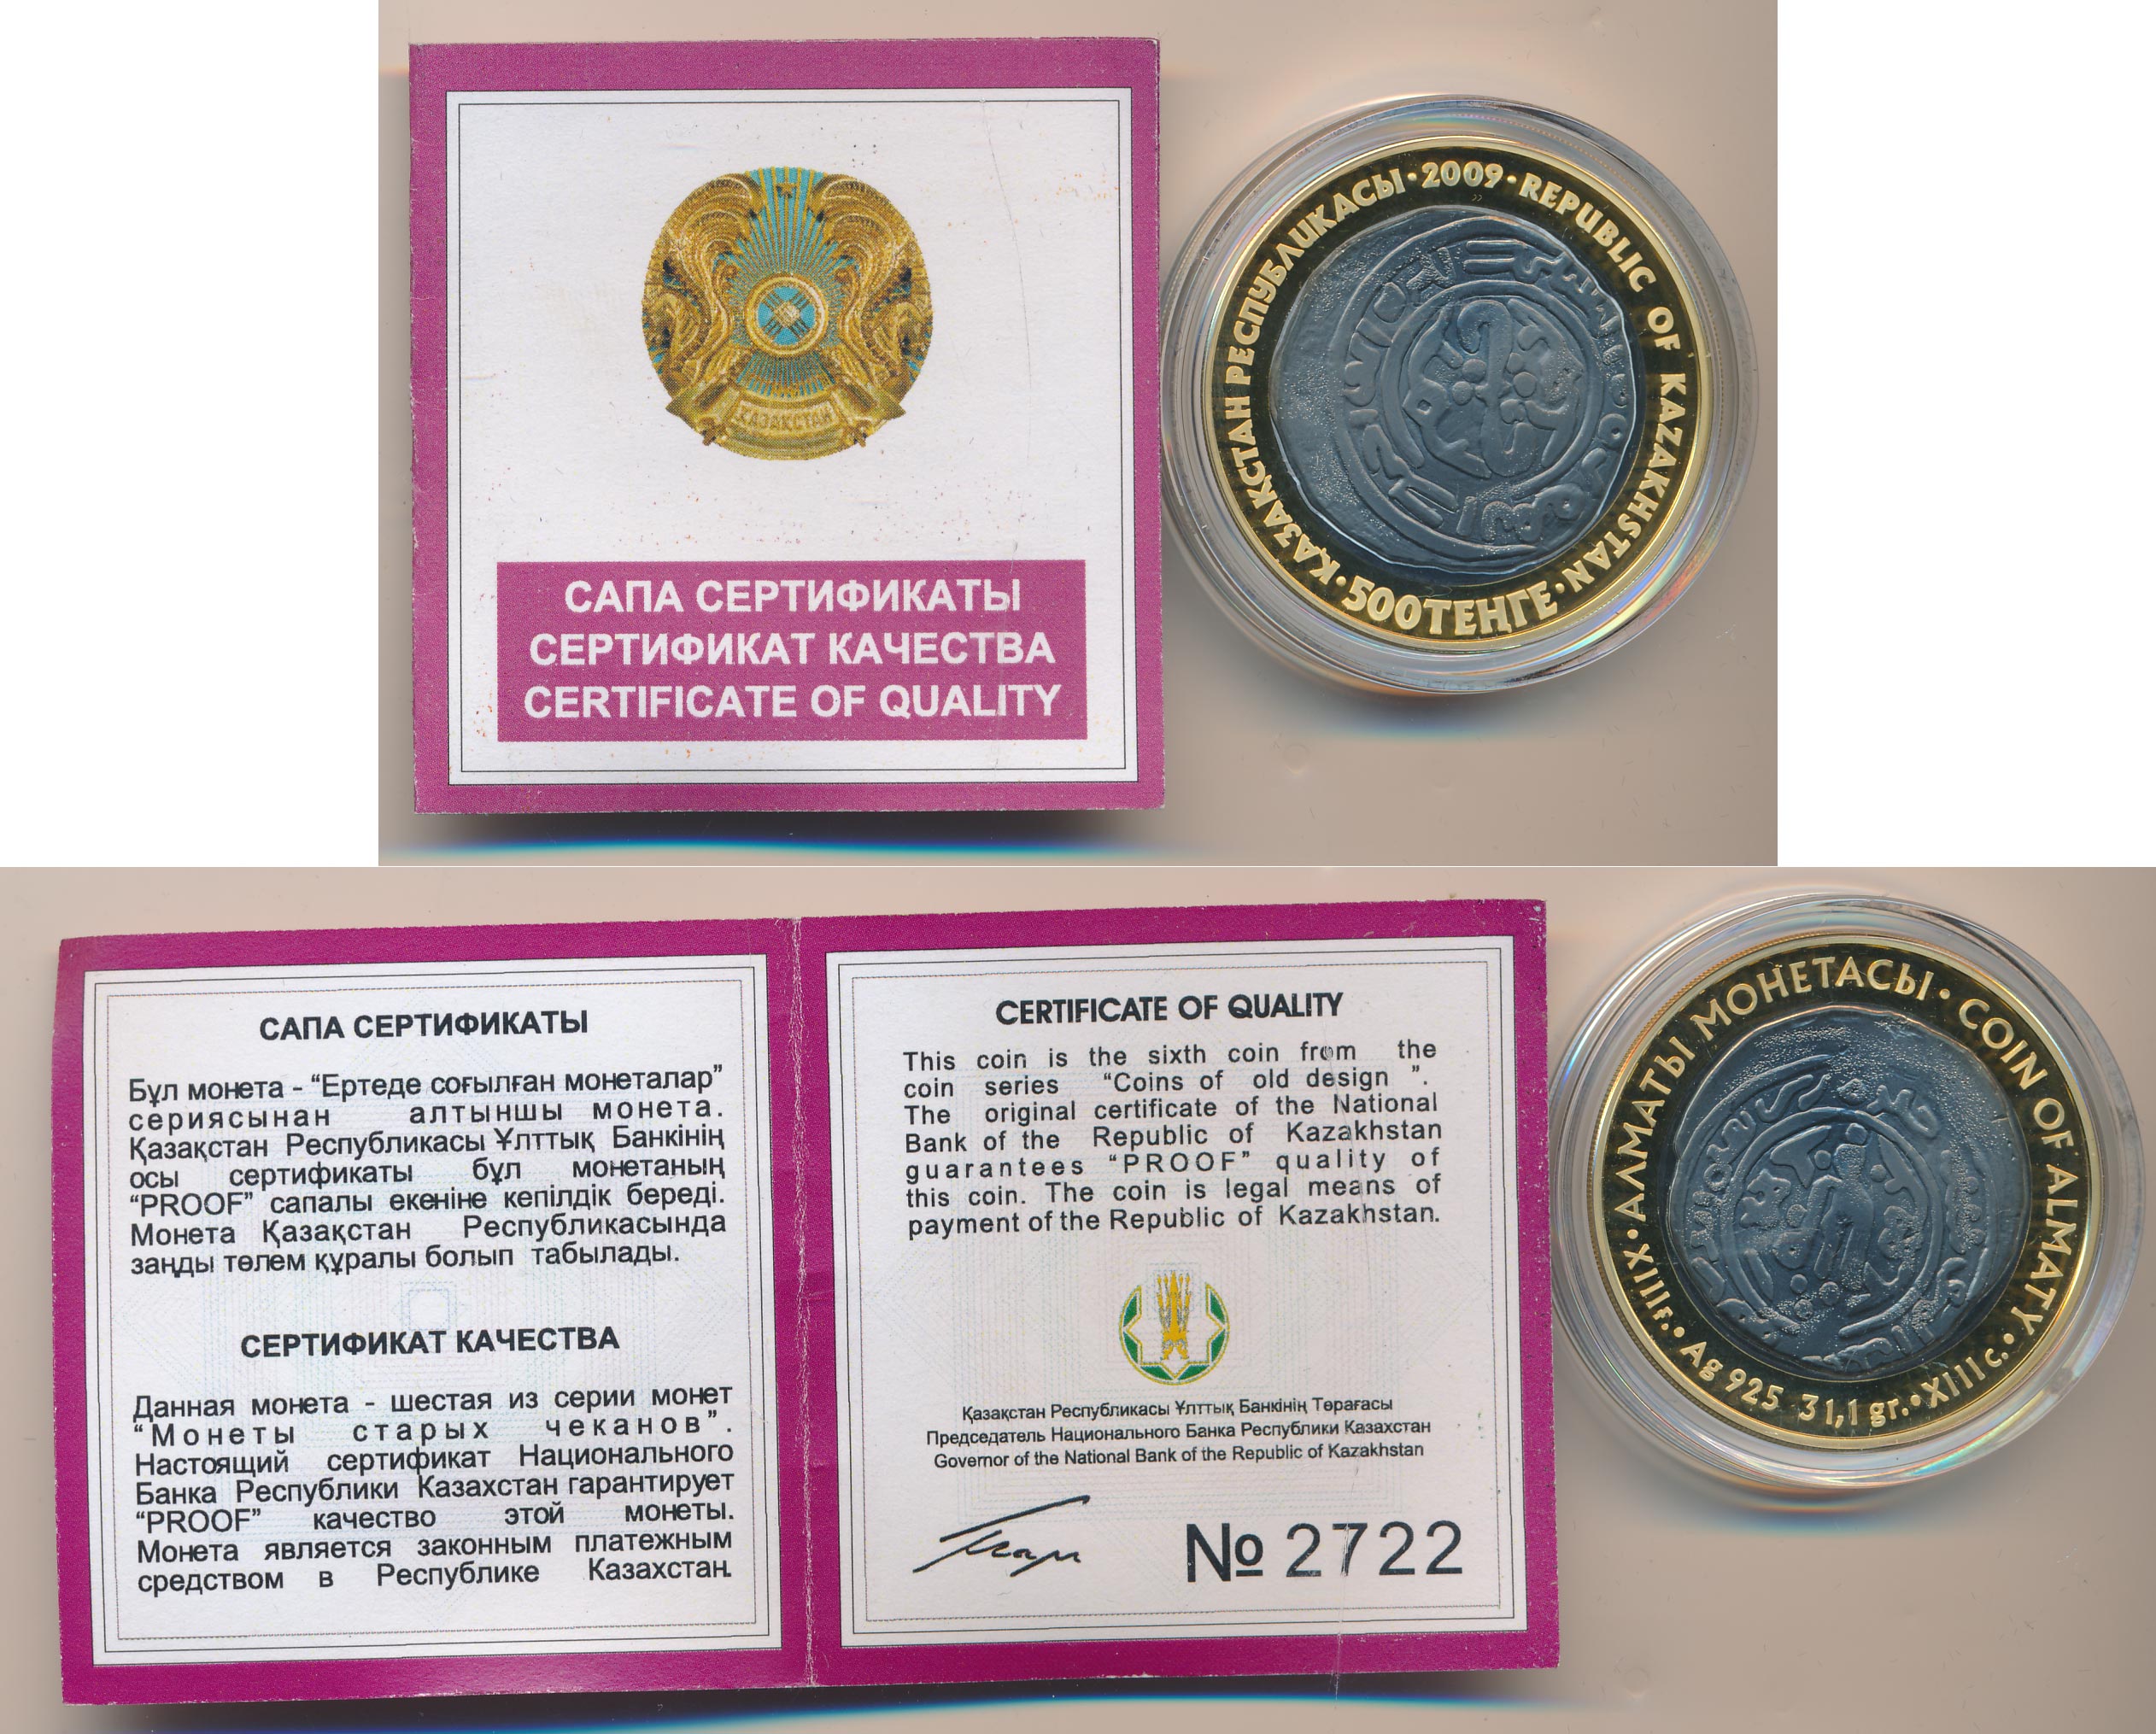 Сертификаты для монет из драгоценных металлов, что это?